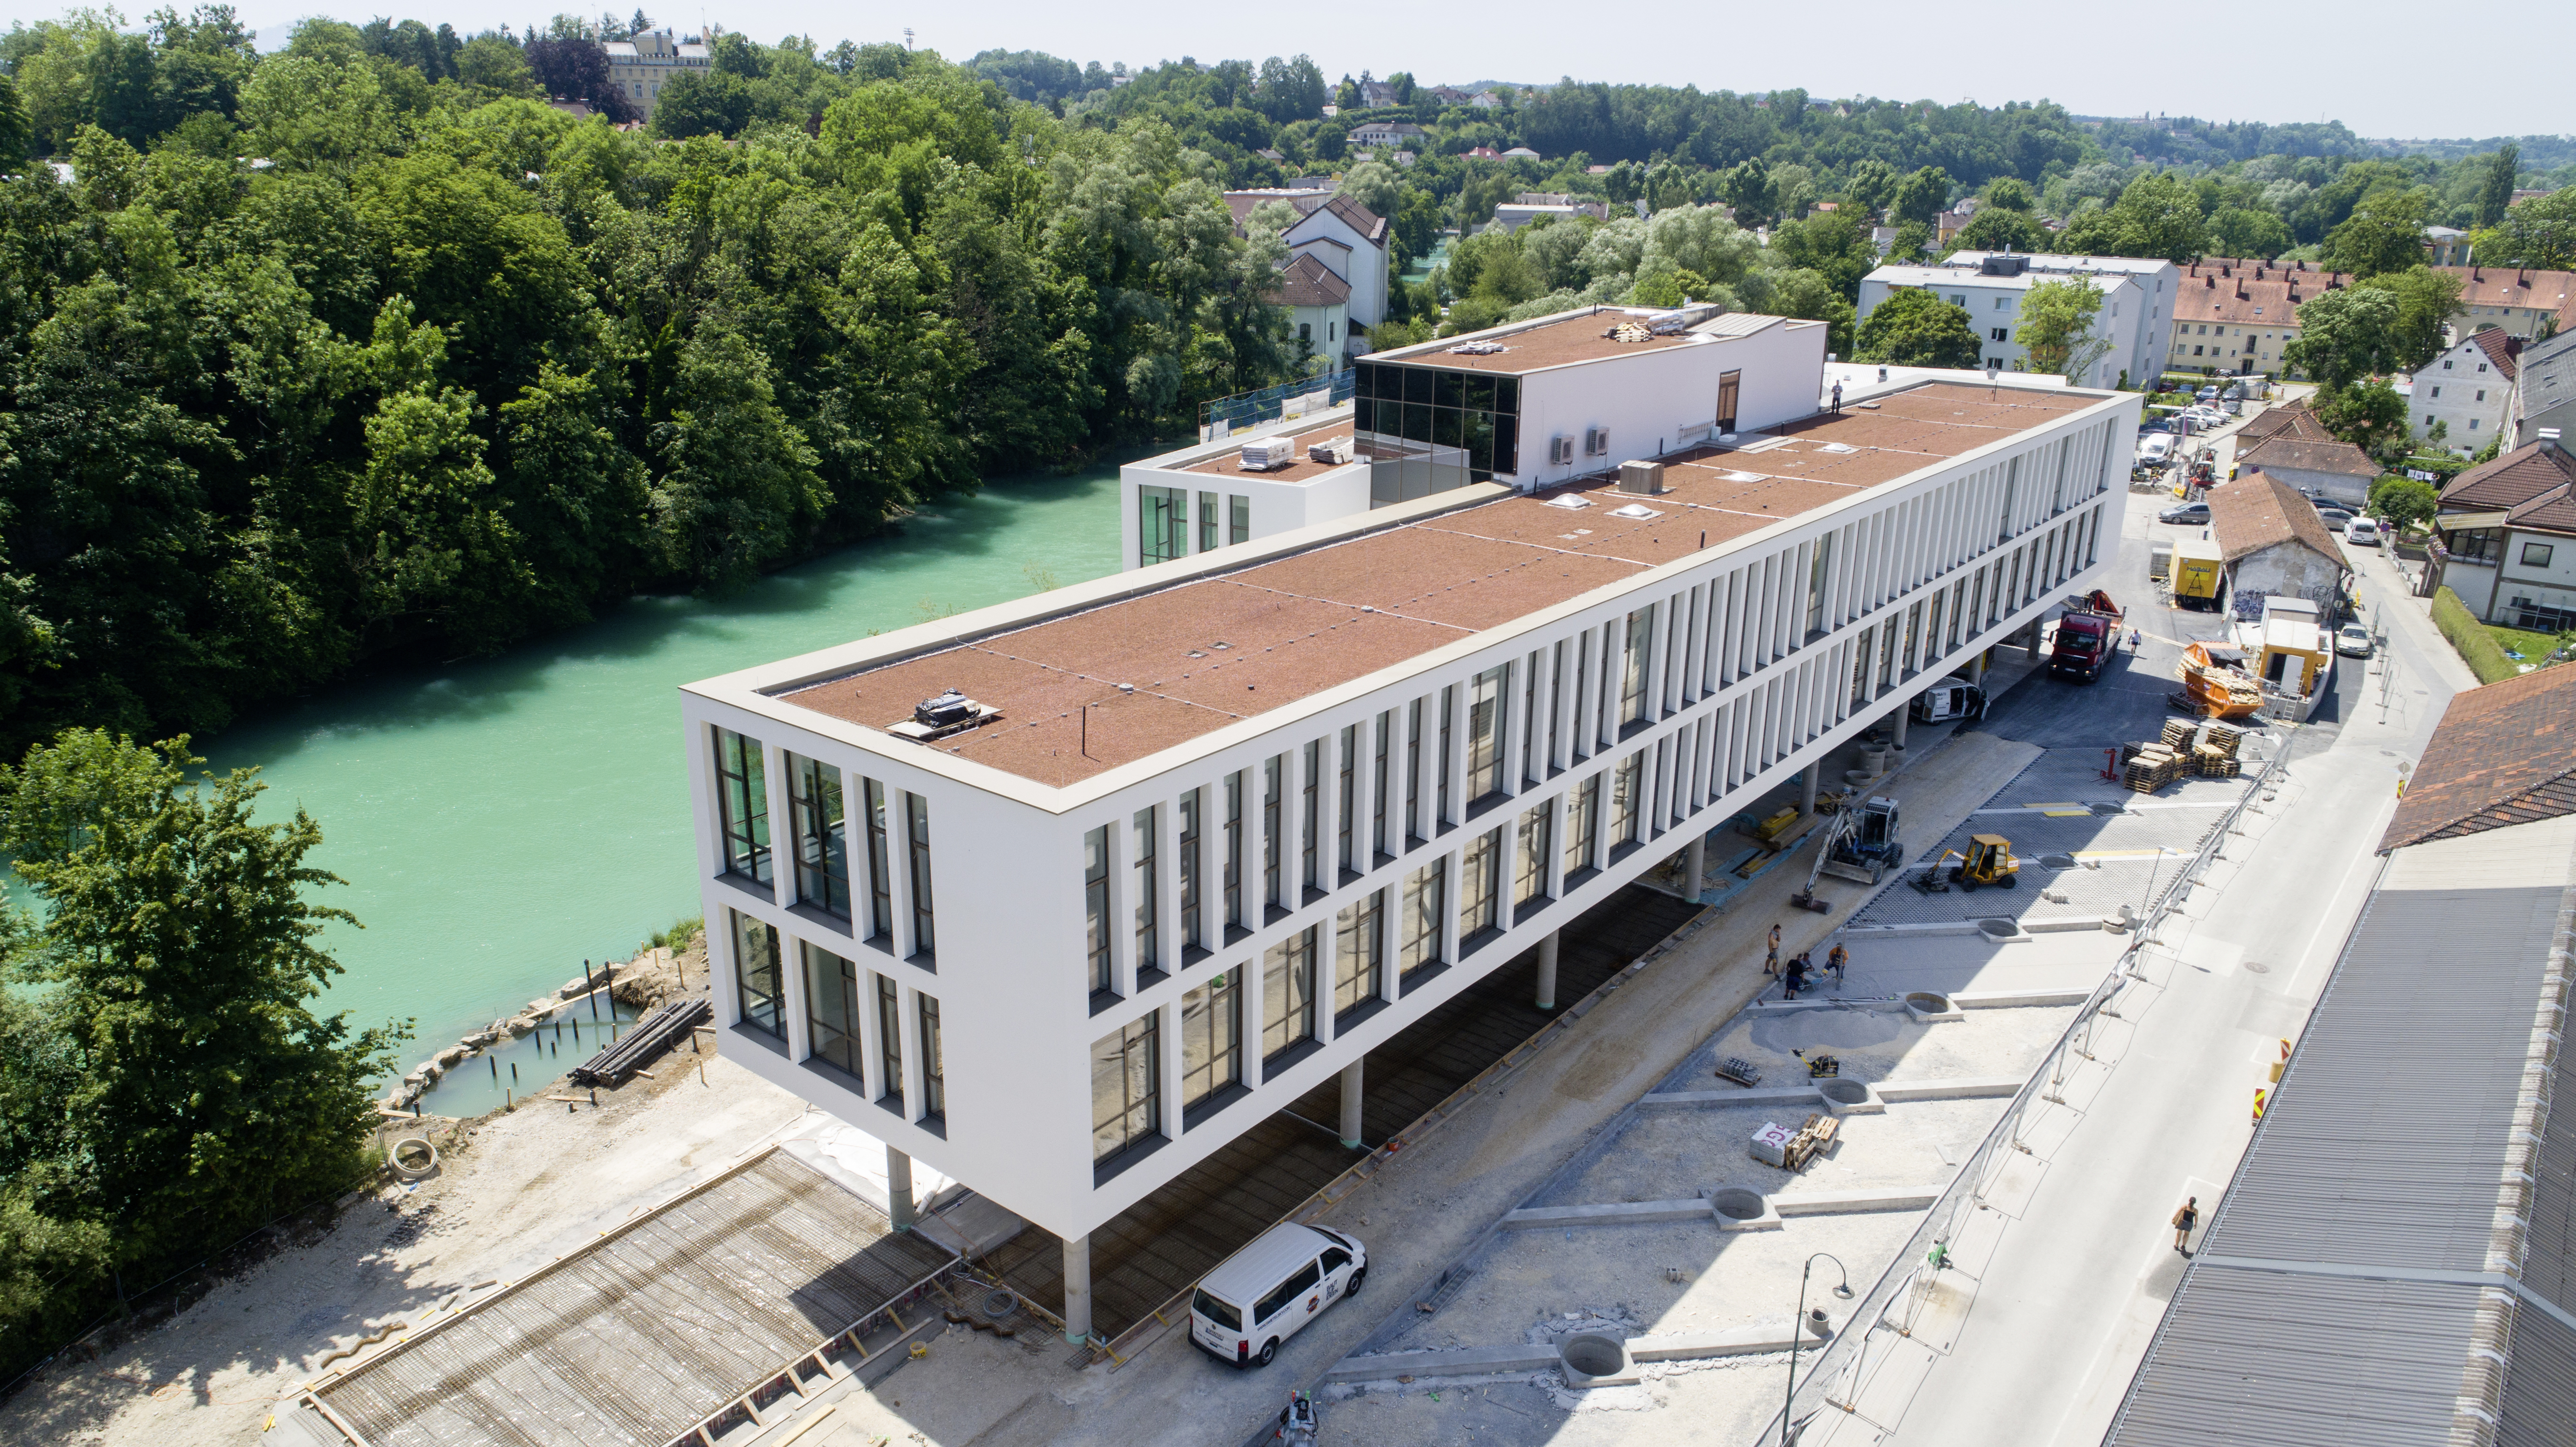 Campusgebäude der Fachhochschule, Steyr - Byggearbejde